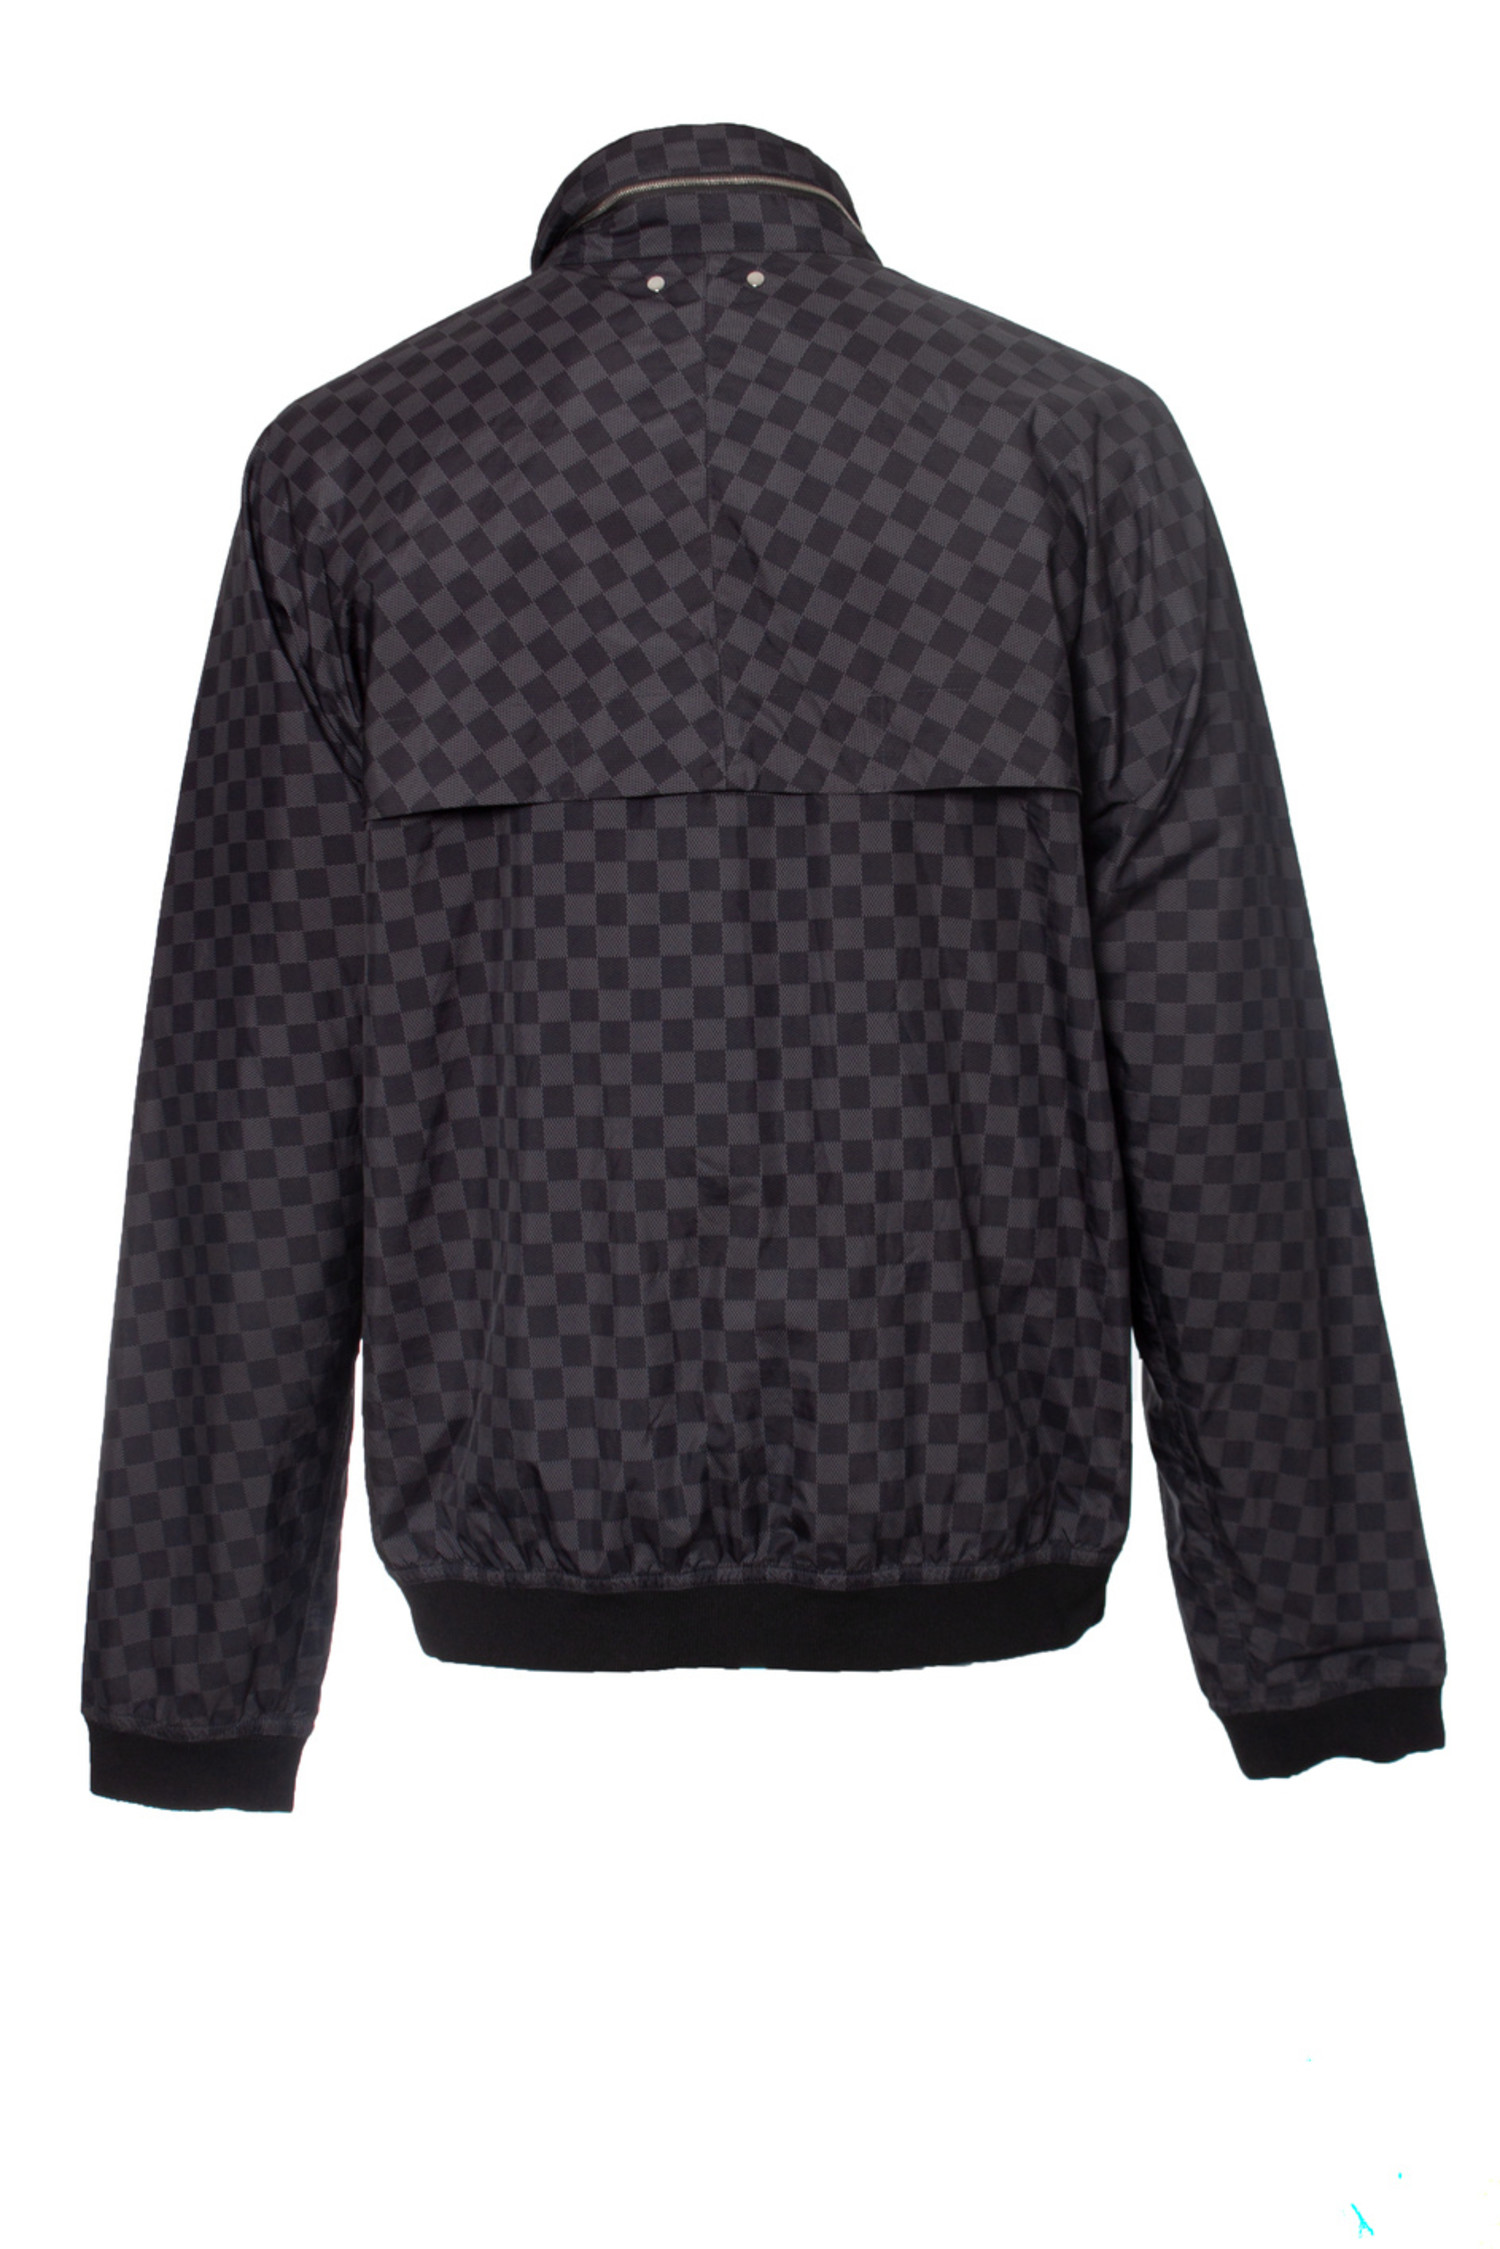 Louis Vuitton, damier graphite windbreaker jacket - Unique Designer Pieces